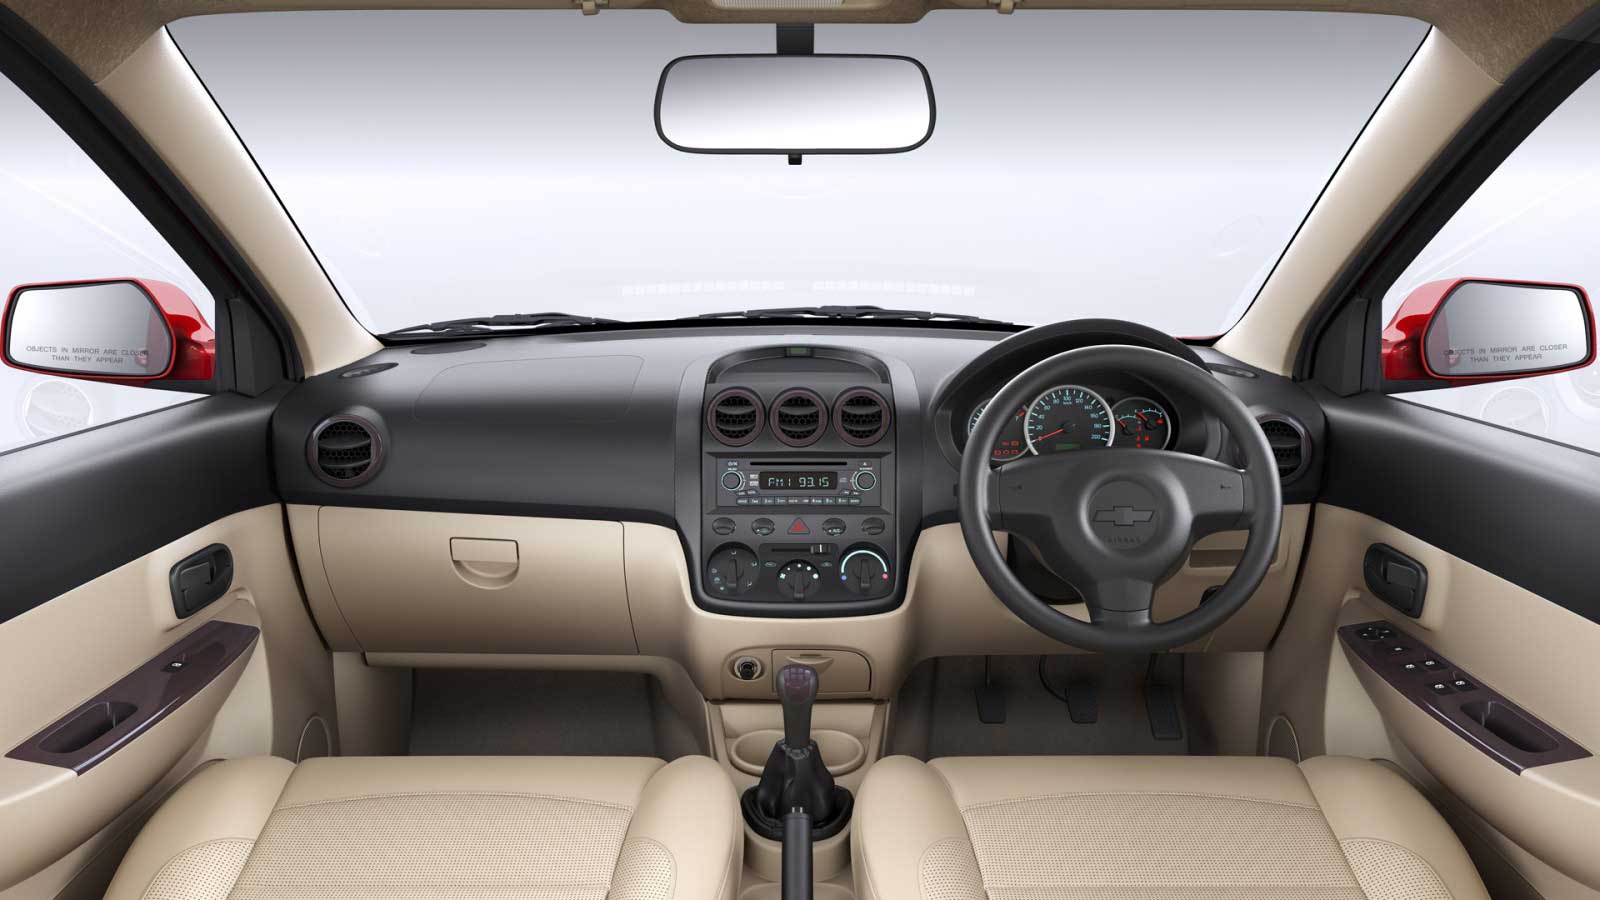 Chevrolet Enjoy 1.4 LS 7 STR Interior front view